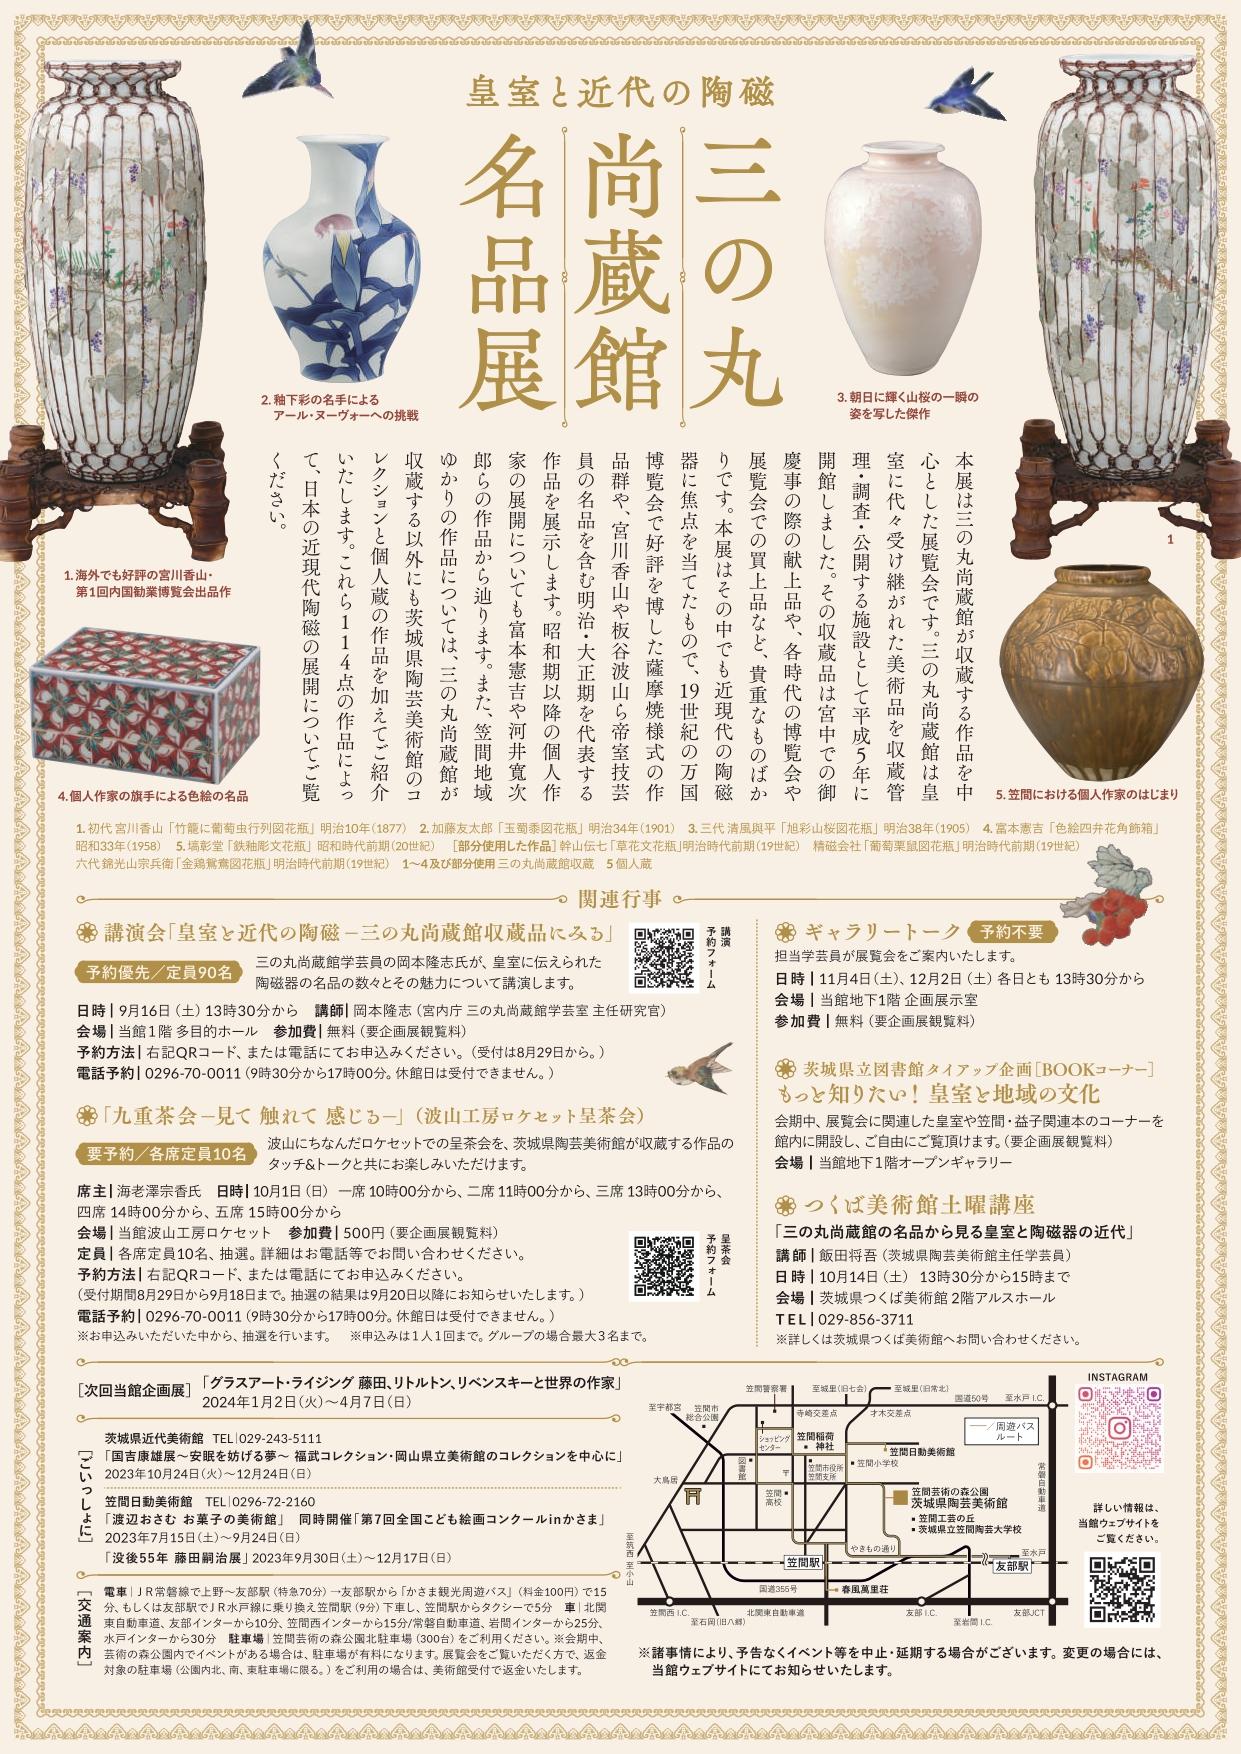 企画展「皇室と近代の陶磁　三の丸尚蔵館名品展」関連行事